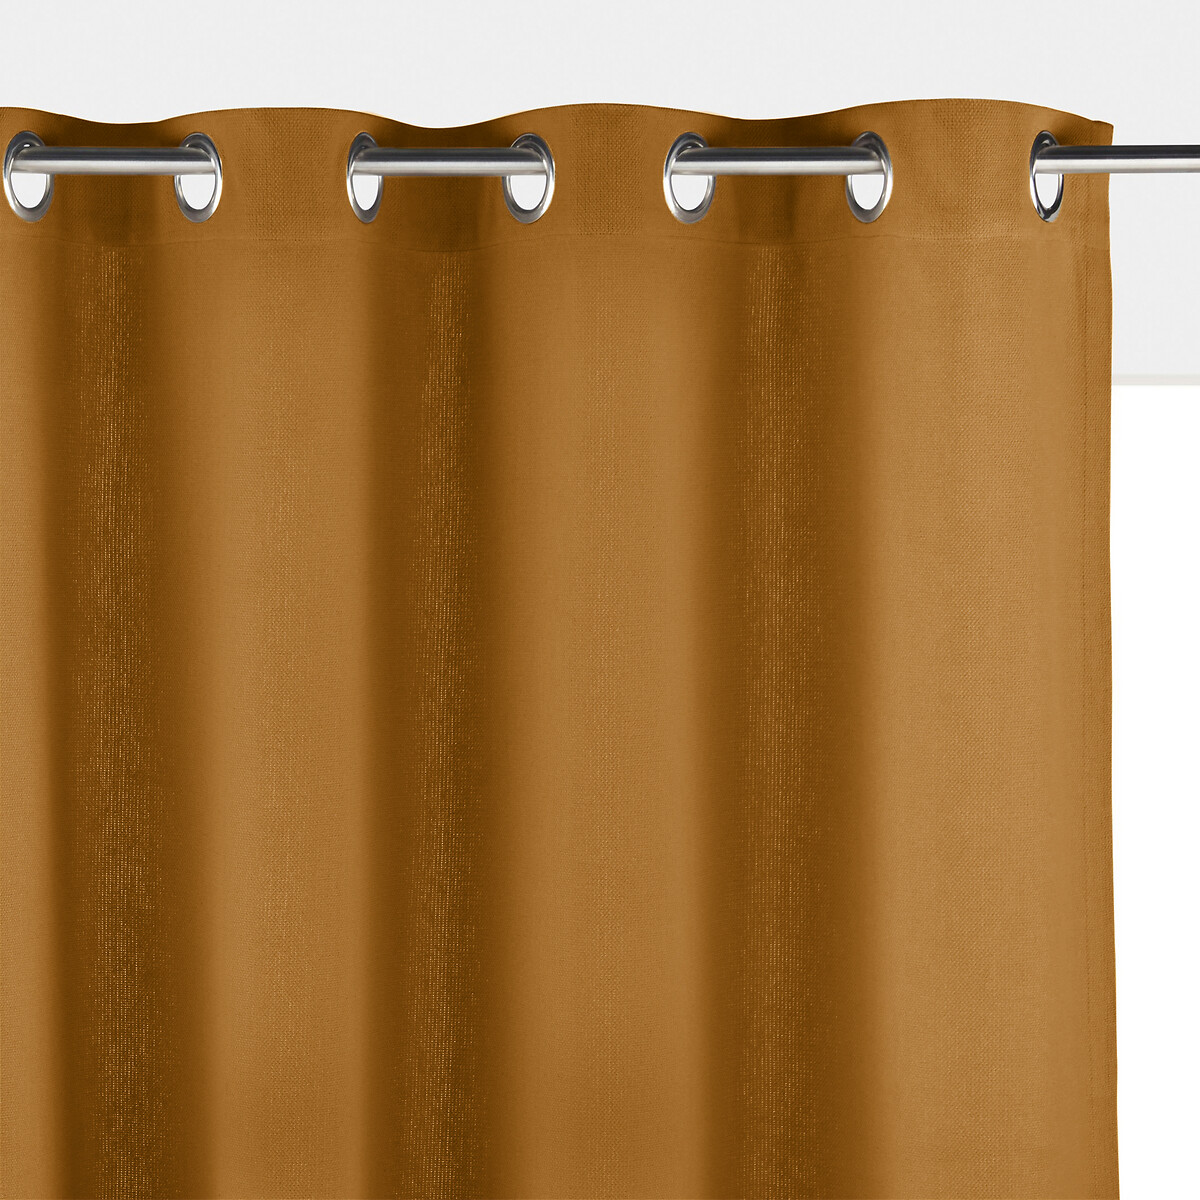 Image of Panama Plain Single Cotton Curtain with Eyelets